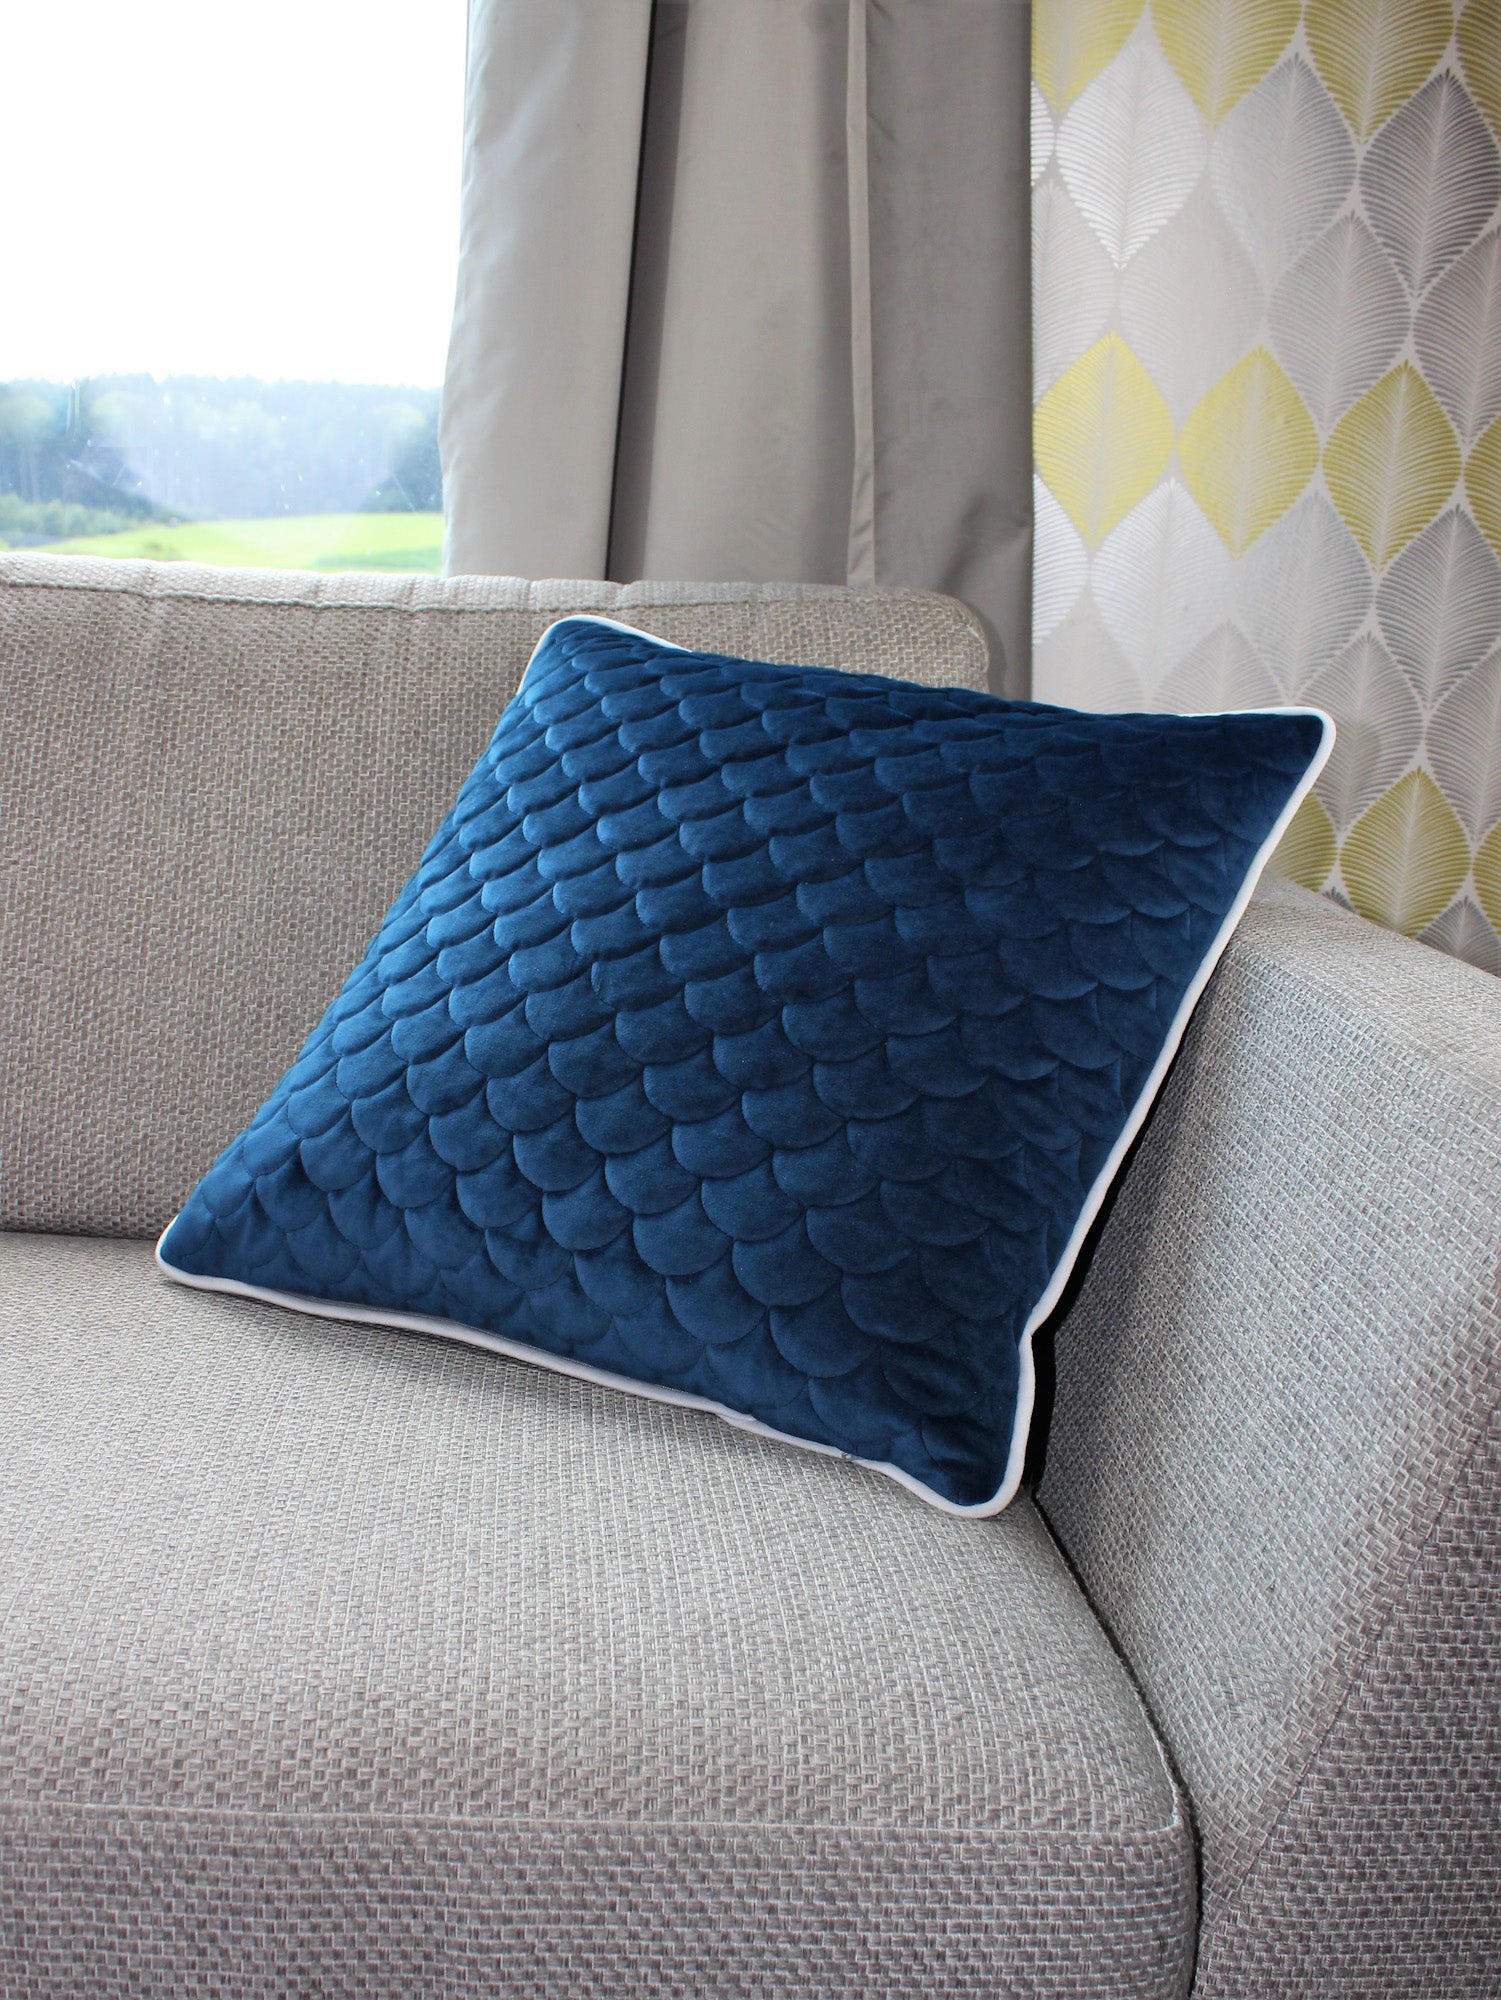 quadratisches Kissen auf Sofa in blauem Samt mit weißem Keder